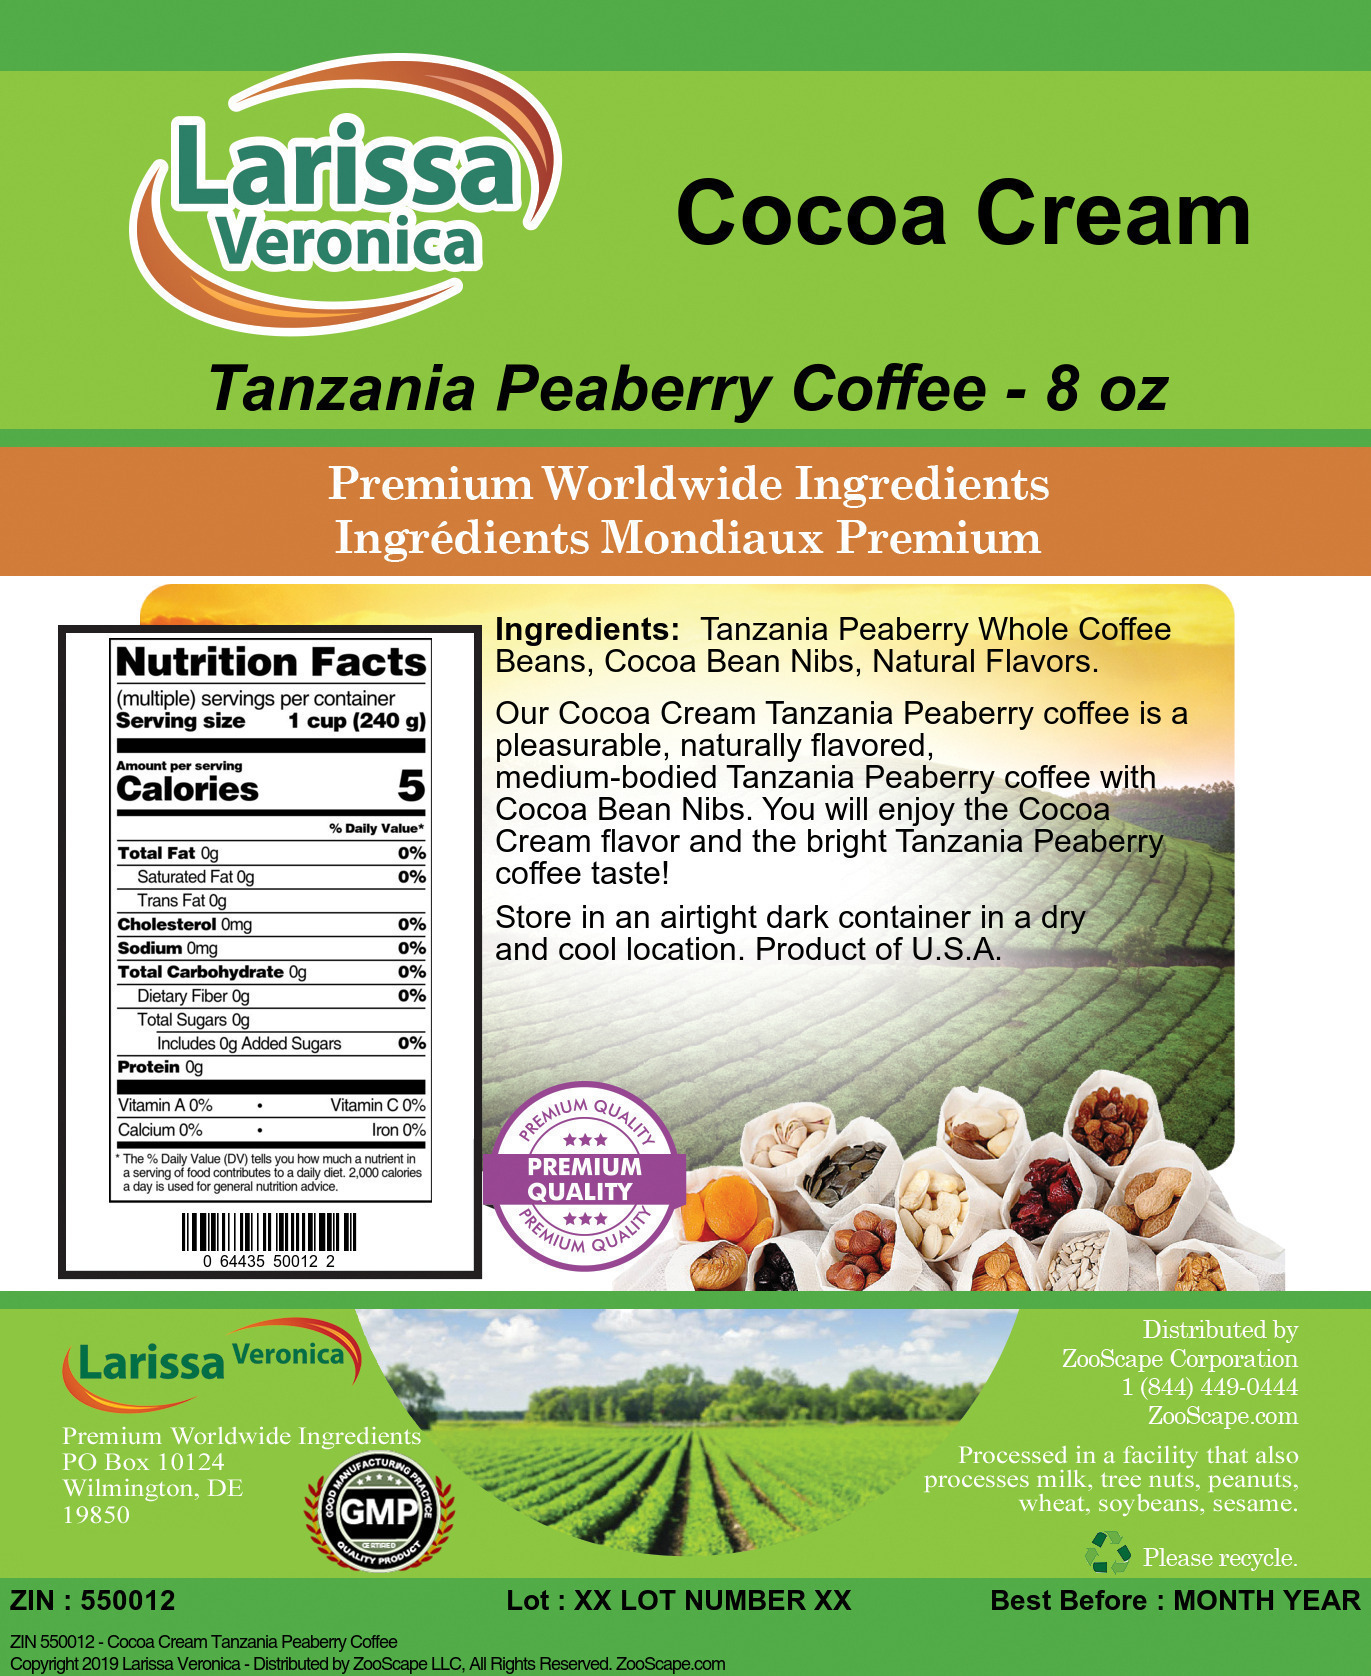 Cocoa Cream Tanzania Peaberry Coffee - Label